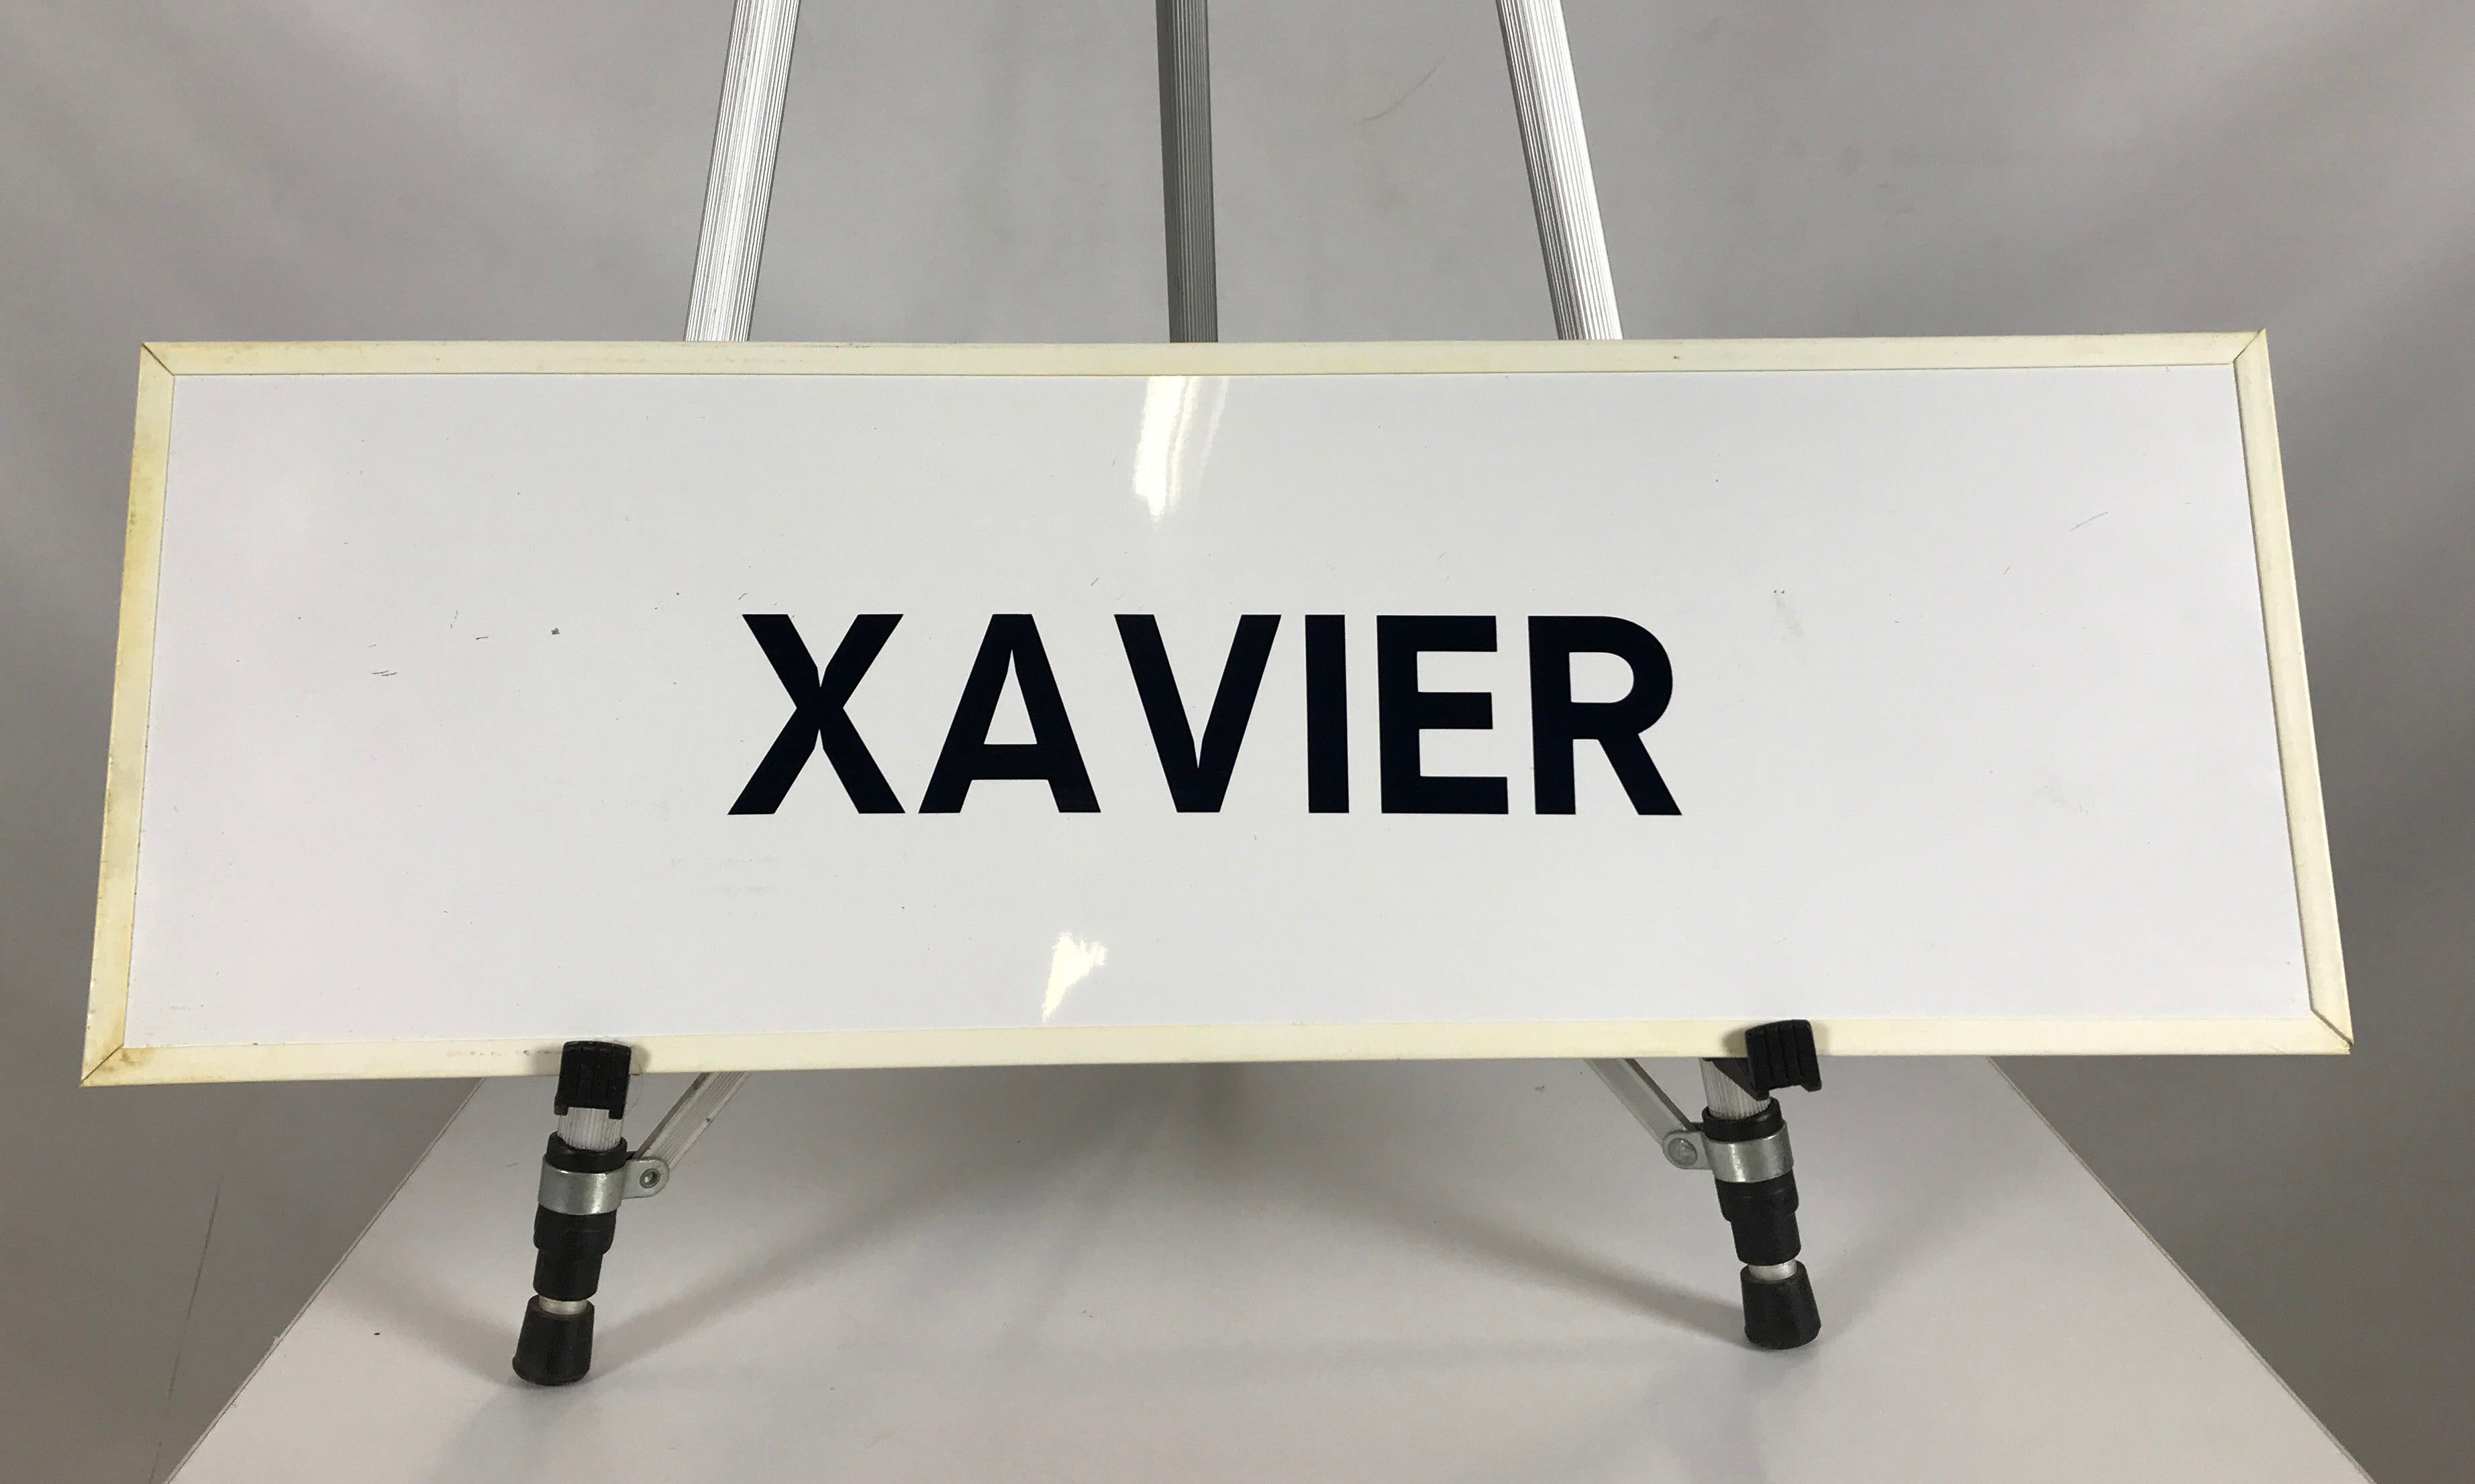 White Framed "Xavier" Picture